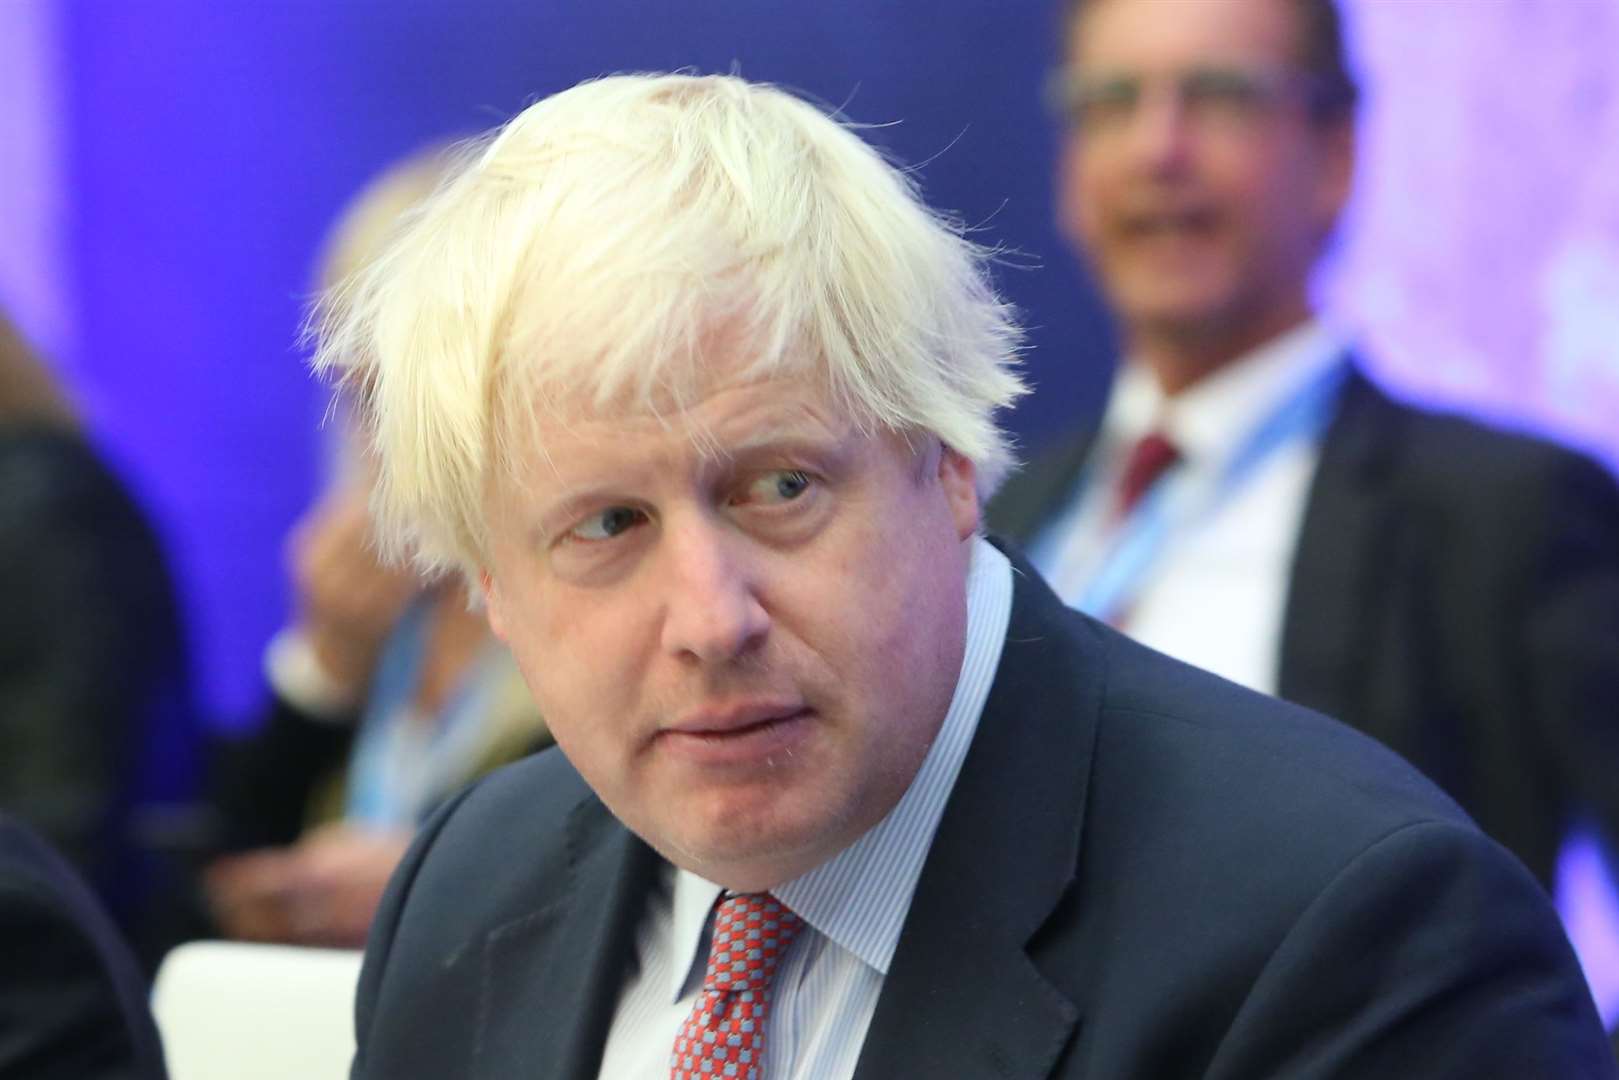 Boris Johnson seemed to fare better than Theresa May at the G7 summit